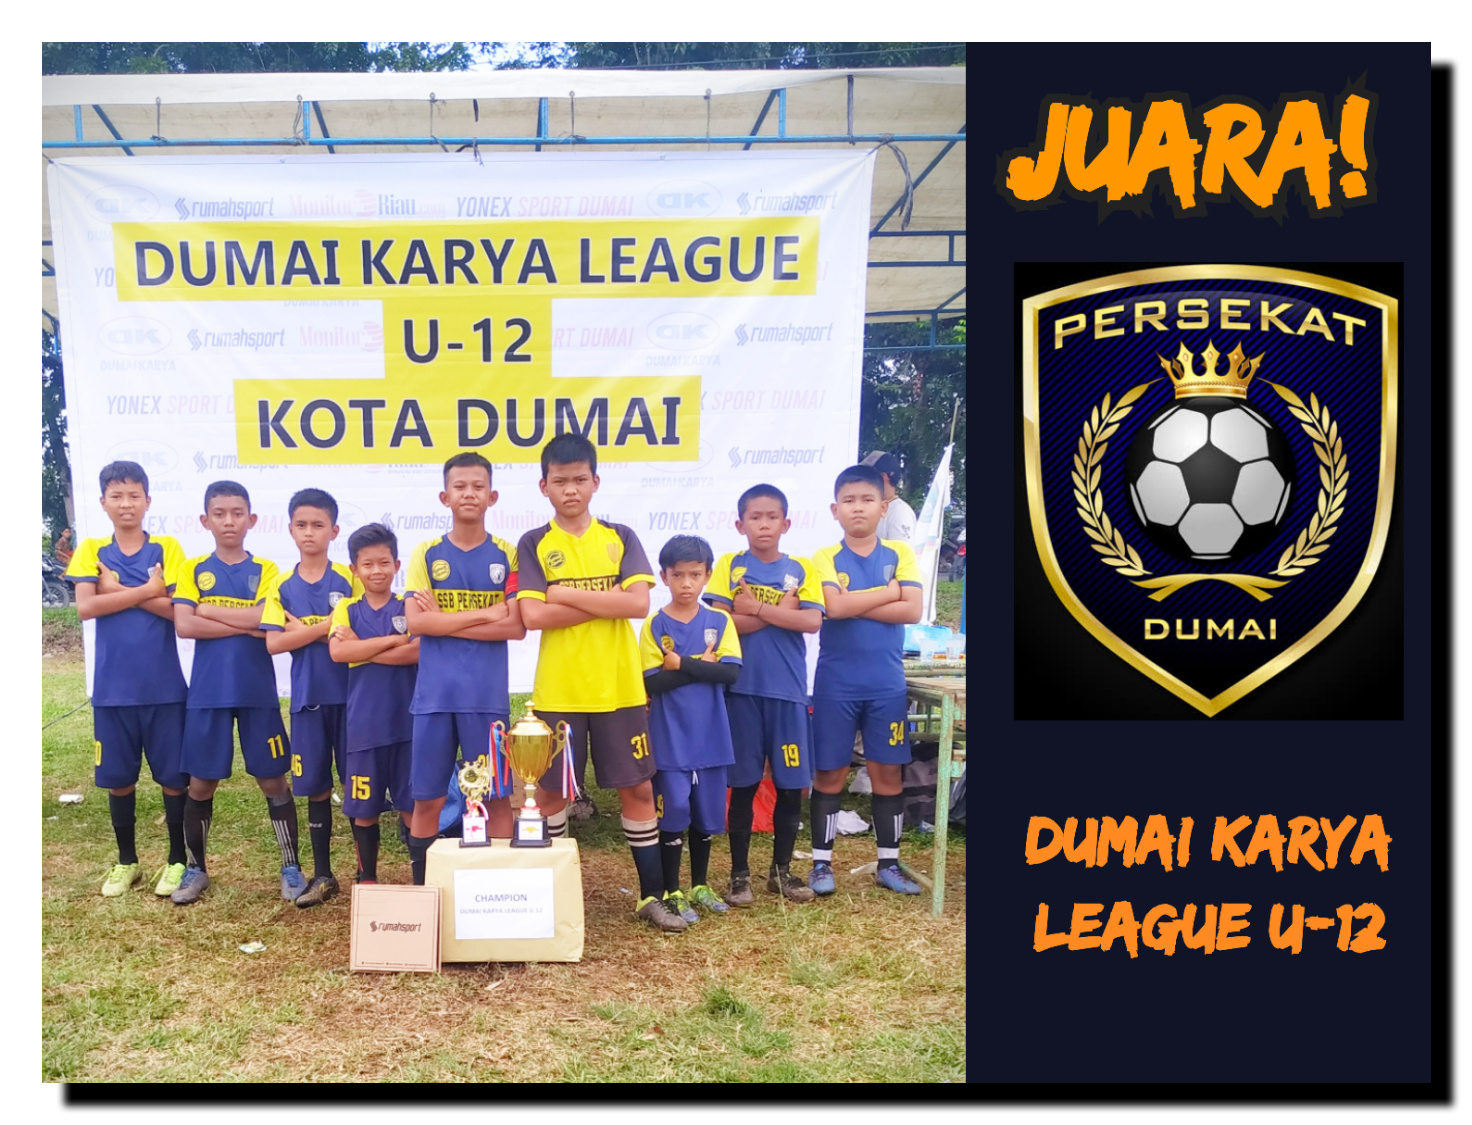 Dumai Karya League U-12 Berakhir, SSB Persekat Dumai Juara